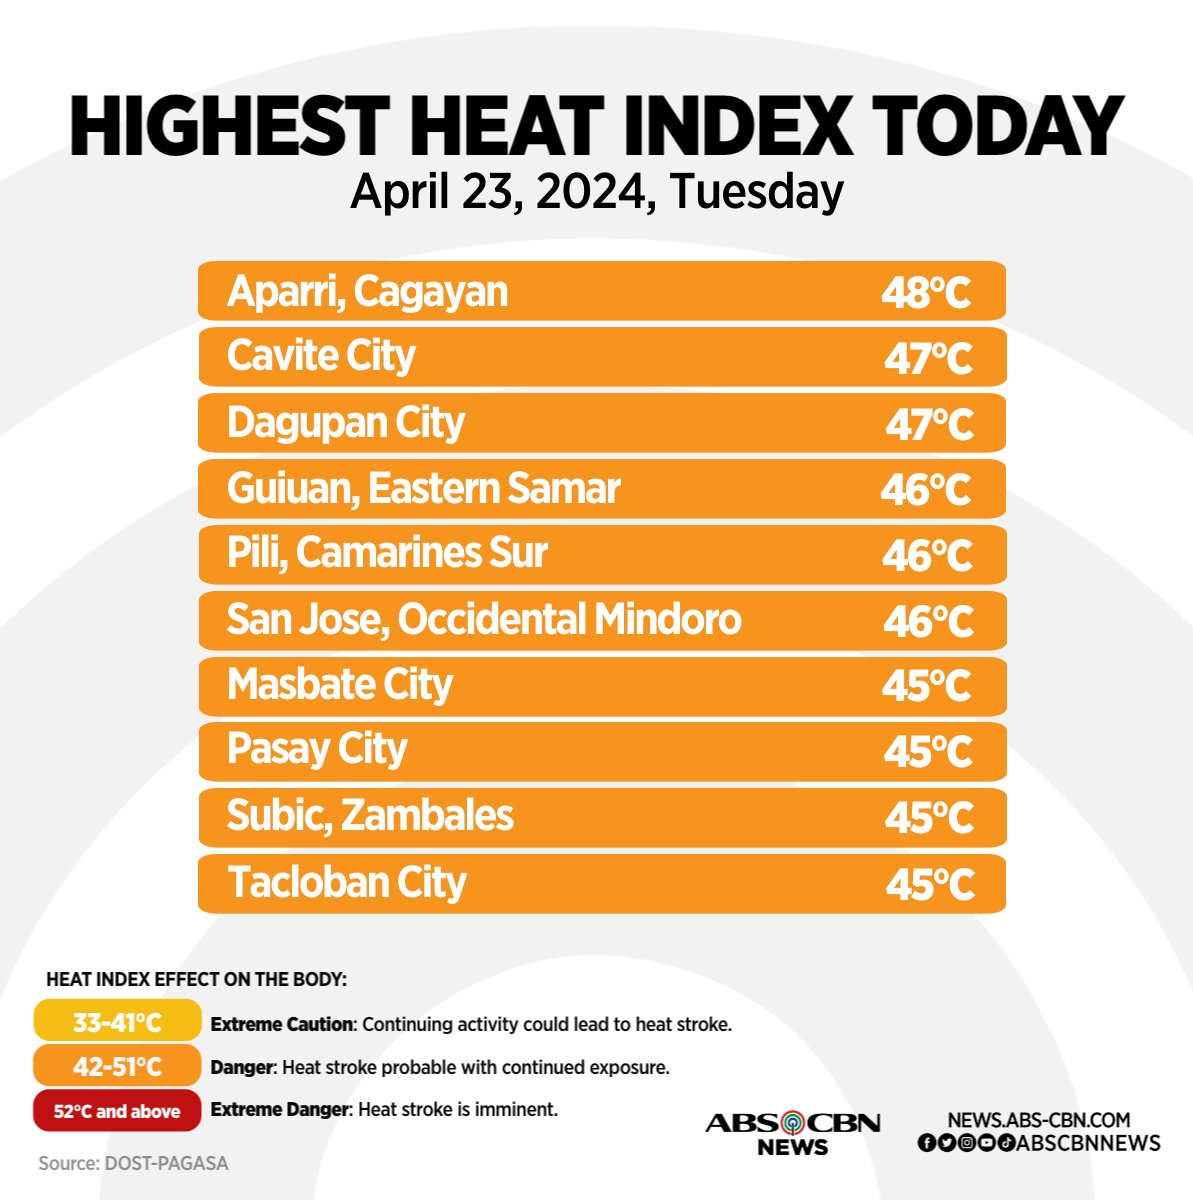 Pumalo sa 48°C ang heat index sa Aparri, Cagayan Martes, April 23. Mas maraming moisture sa hangin ang dahilan ng mas mataas na heat index o nararamdamang init. Nagdulot din ito ng thunderstorms sa ilang lugar. #WeatherPatrol | via @arielrojasPH